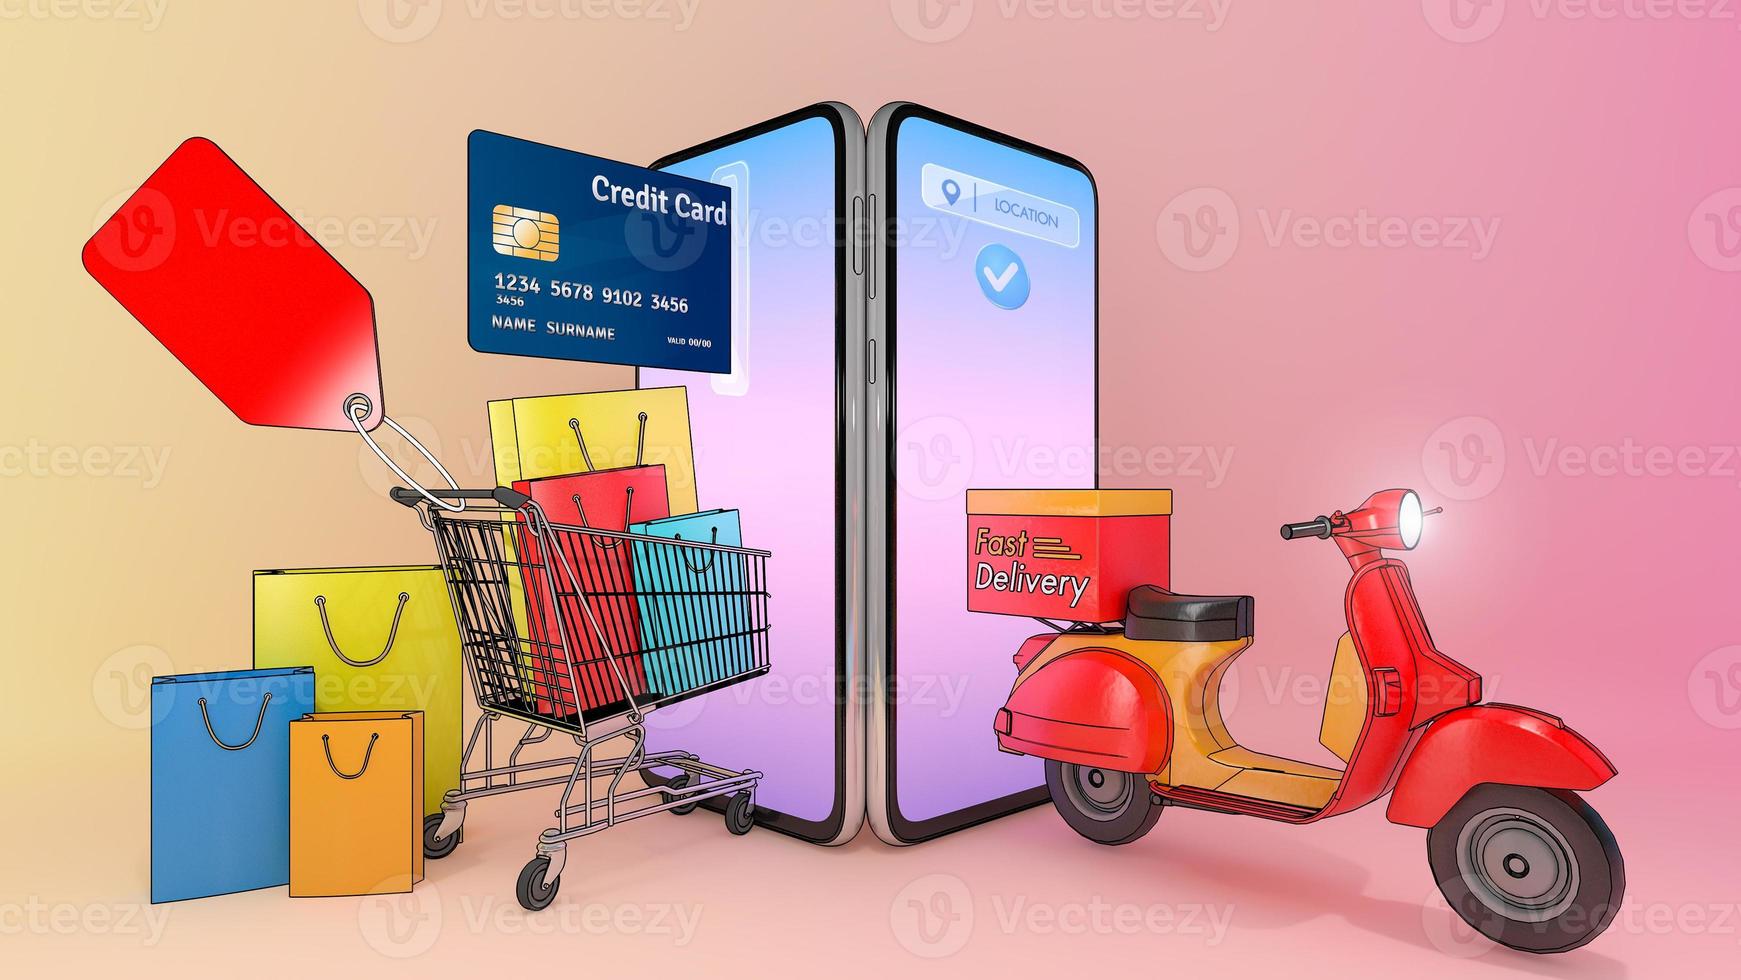 Bunte Papiereinkaufstüten und Kreditkarten in einem Einkaufswagen mit Roller erschienen auf dem Smartphone-Bildschirm.,Konzept des schnellen Lieferservice und Online-Shopping.,3D-Illustration mit Objekt-Beschneidungspfad. foto